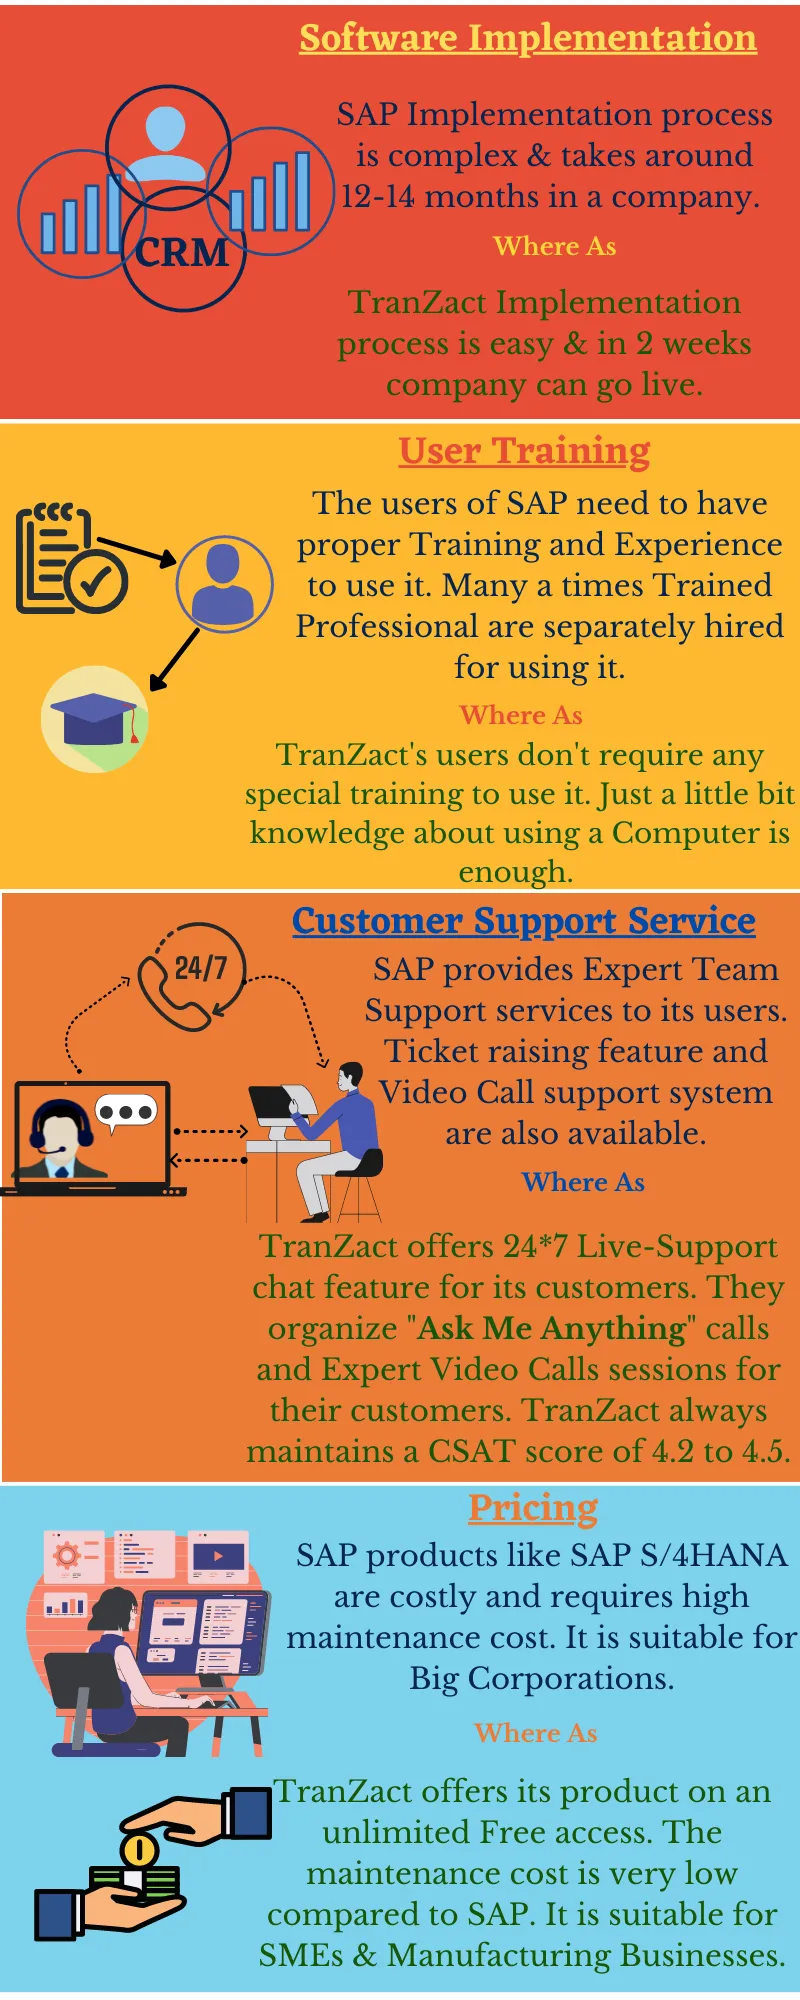 SAP V/s TranZact: Complete comparison